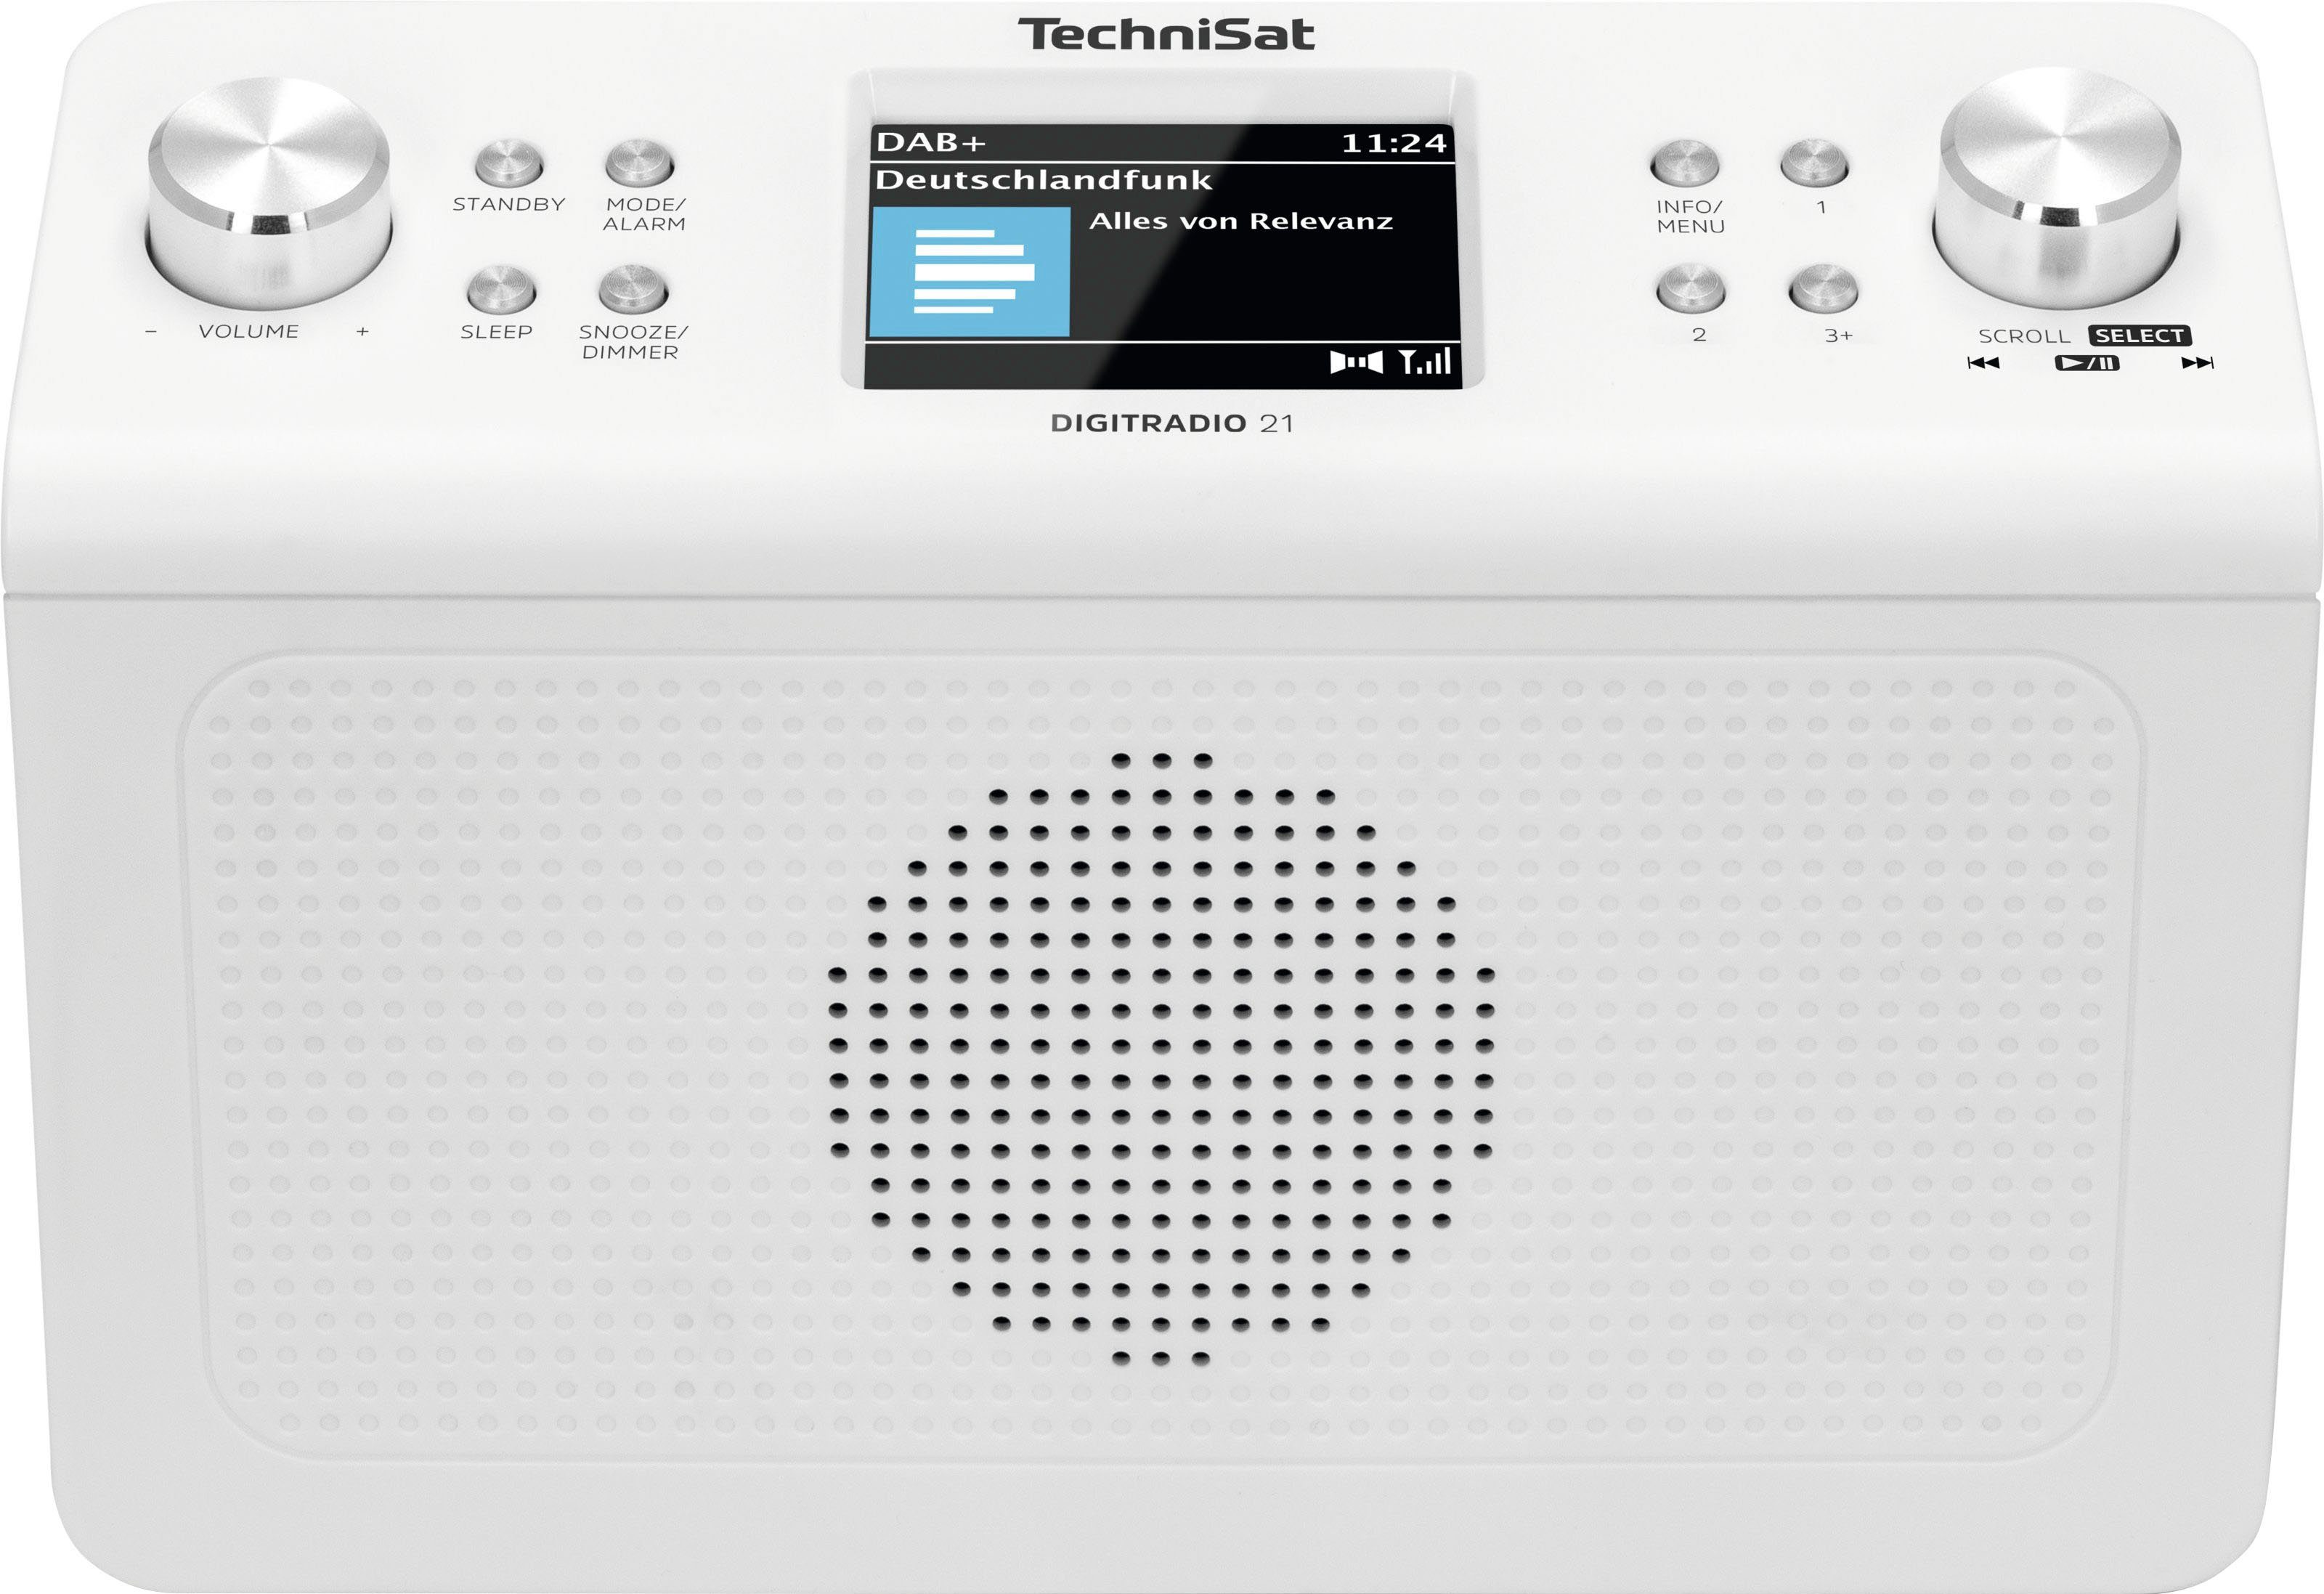 Küchen-Radio (Digitalradio TechniSat weiß RDS, (DAB), UKW W, 2 DIGITRADIO 21 mit Unterbau-Radio,Küchen-Radio)